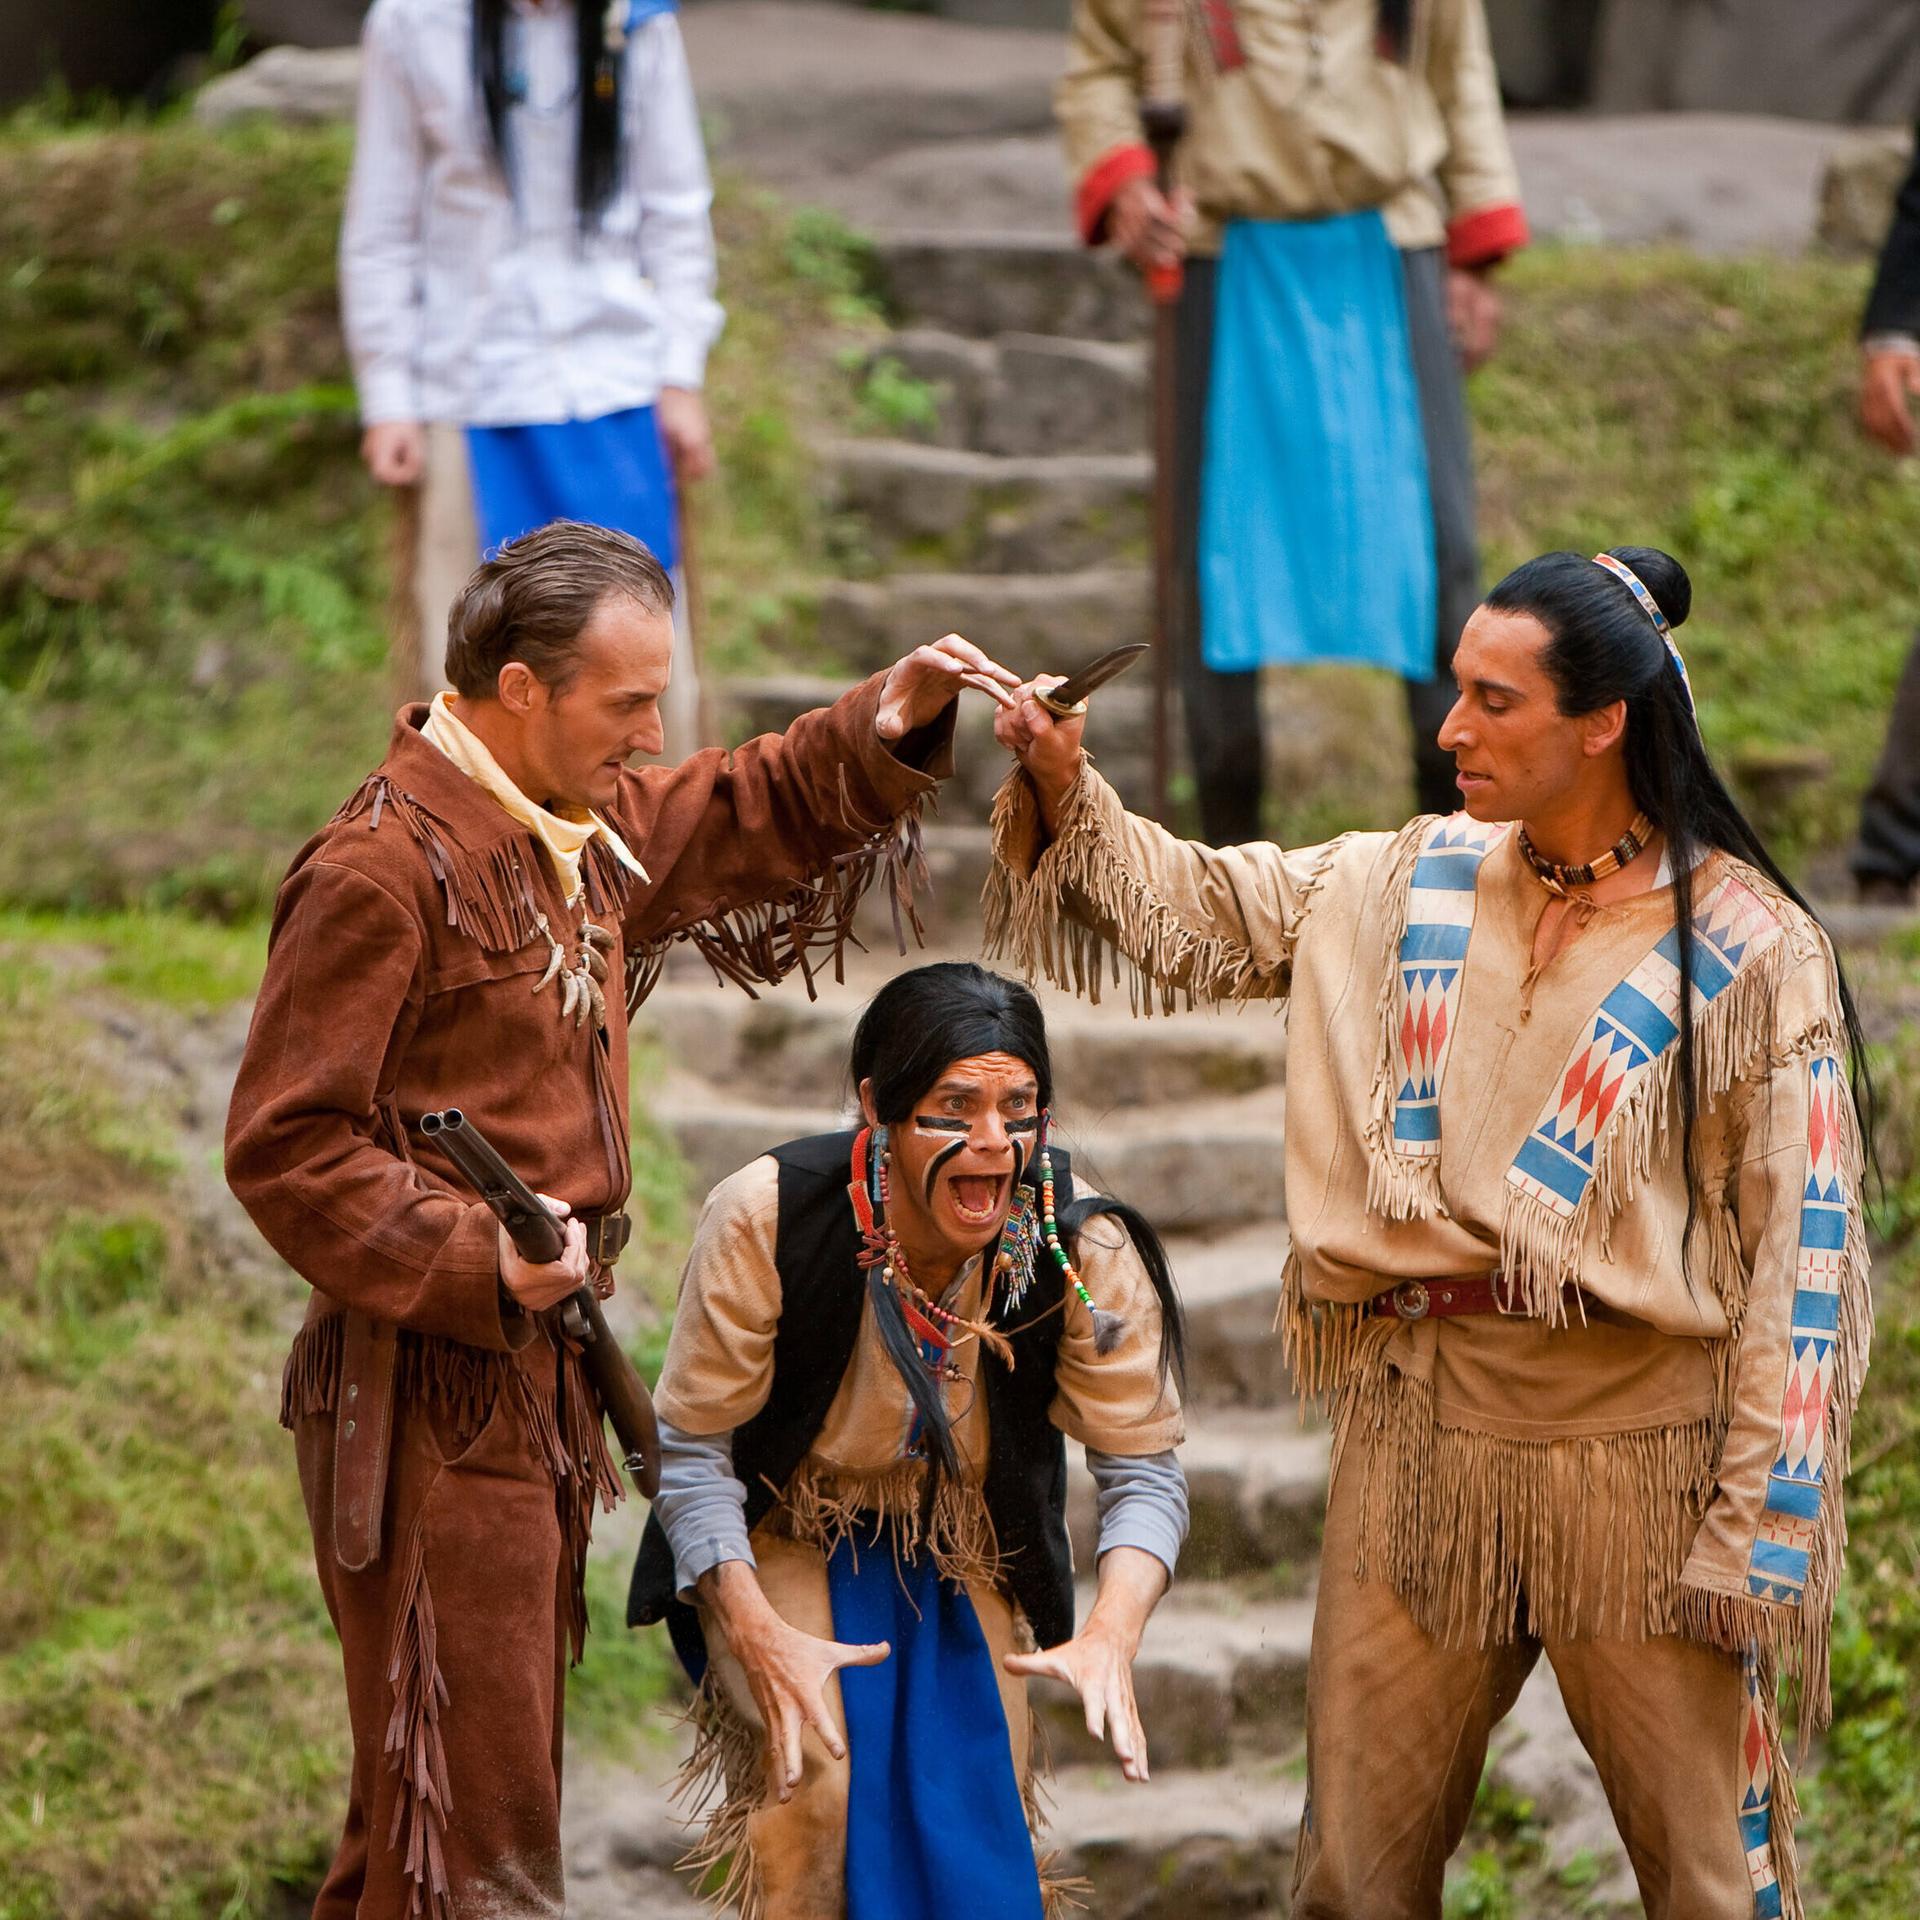 Szene aus der Karl-May-Festspiele Aufführung "Der Ölprinz". Links ein Indianer, rechts ein weisser Mann mit Gewehr.